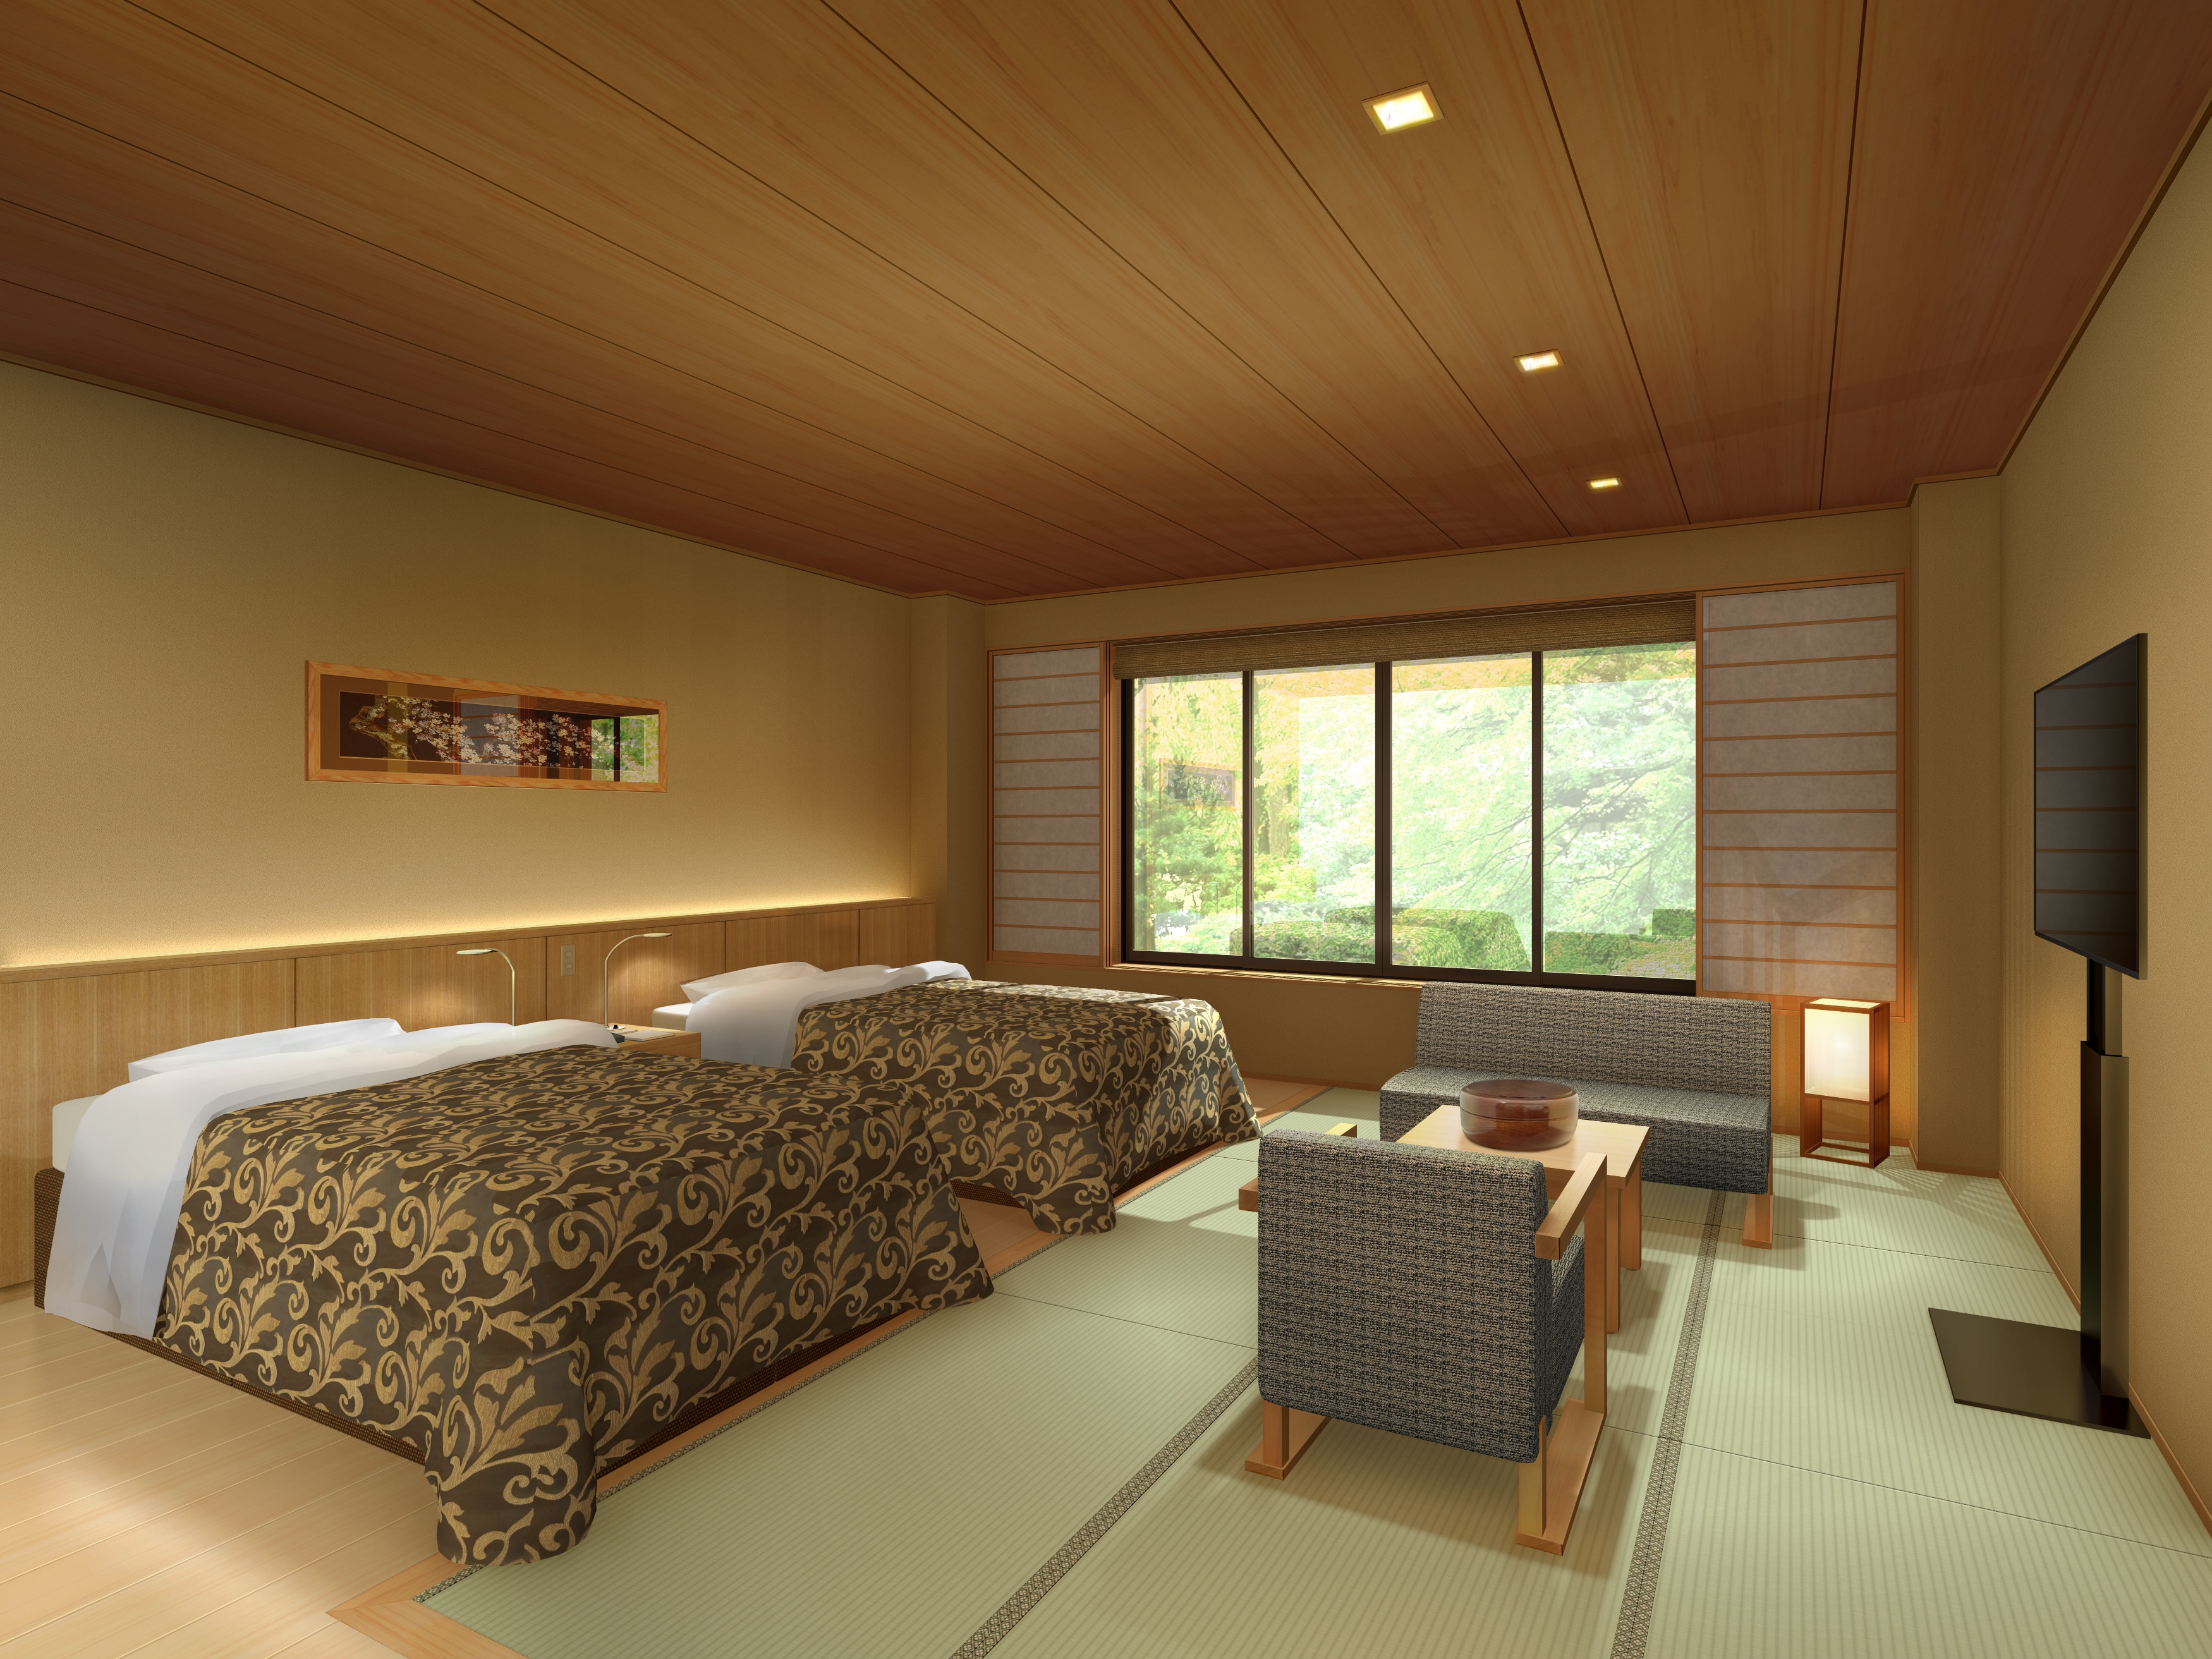 Kamar tamu modern bergaya Jepang semi-double bed yang dapat menampung hingga 3 orang